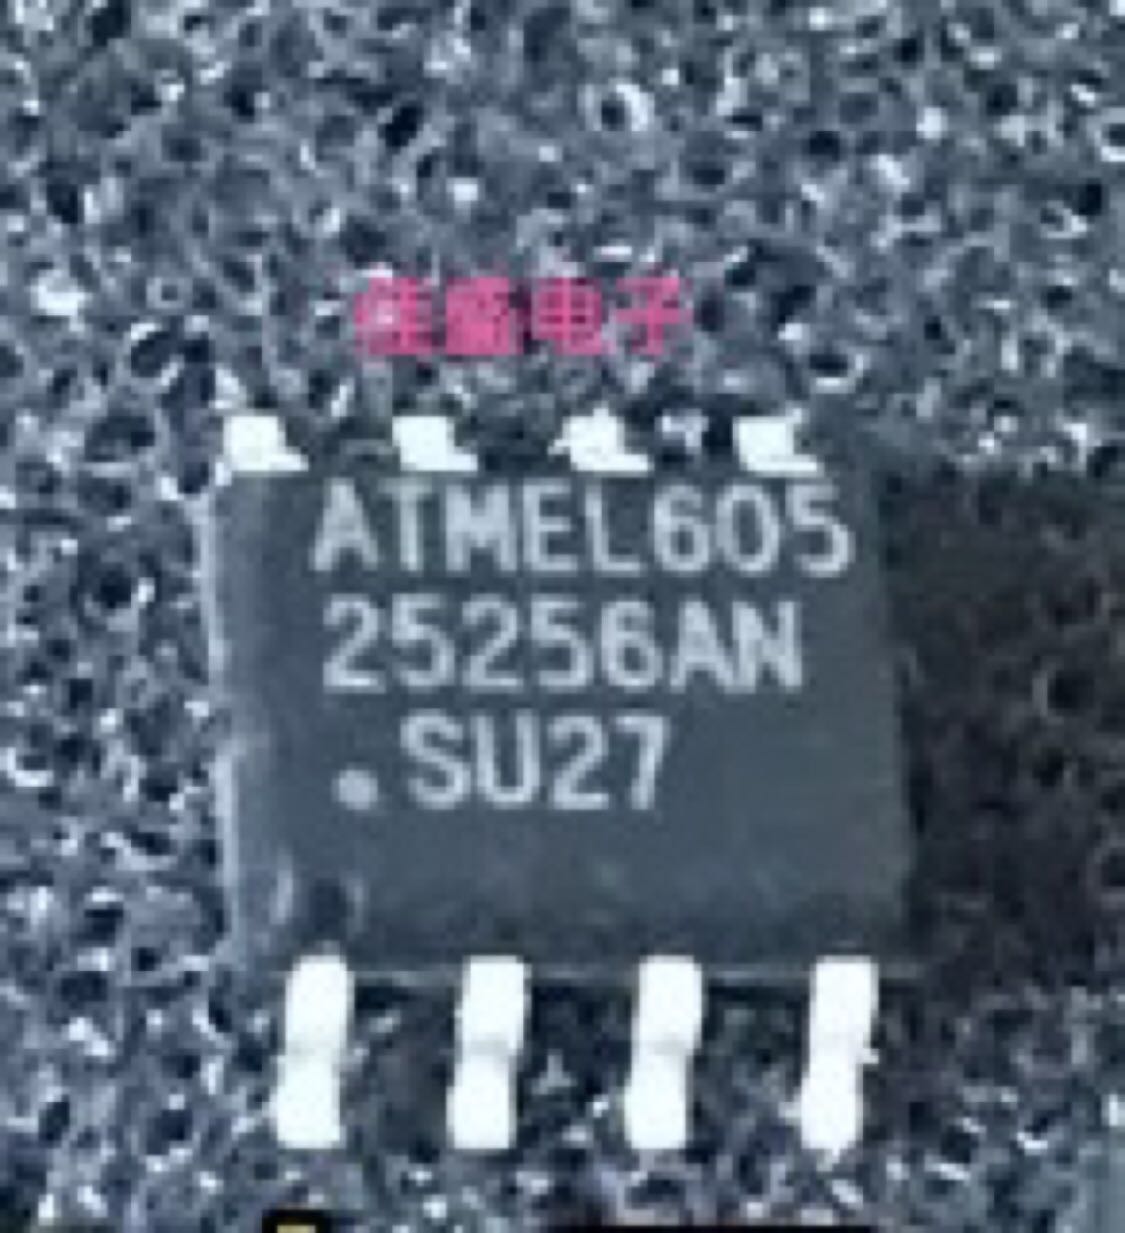 25256AN AT25256AN-SU27 AT25256AN存储器IC芯片 SOP8可直拍